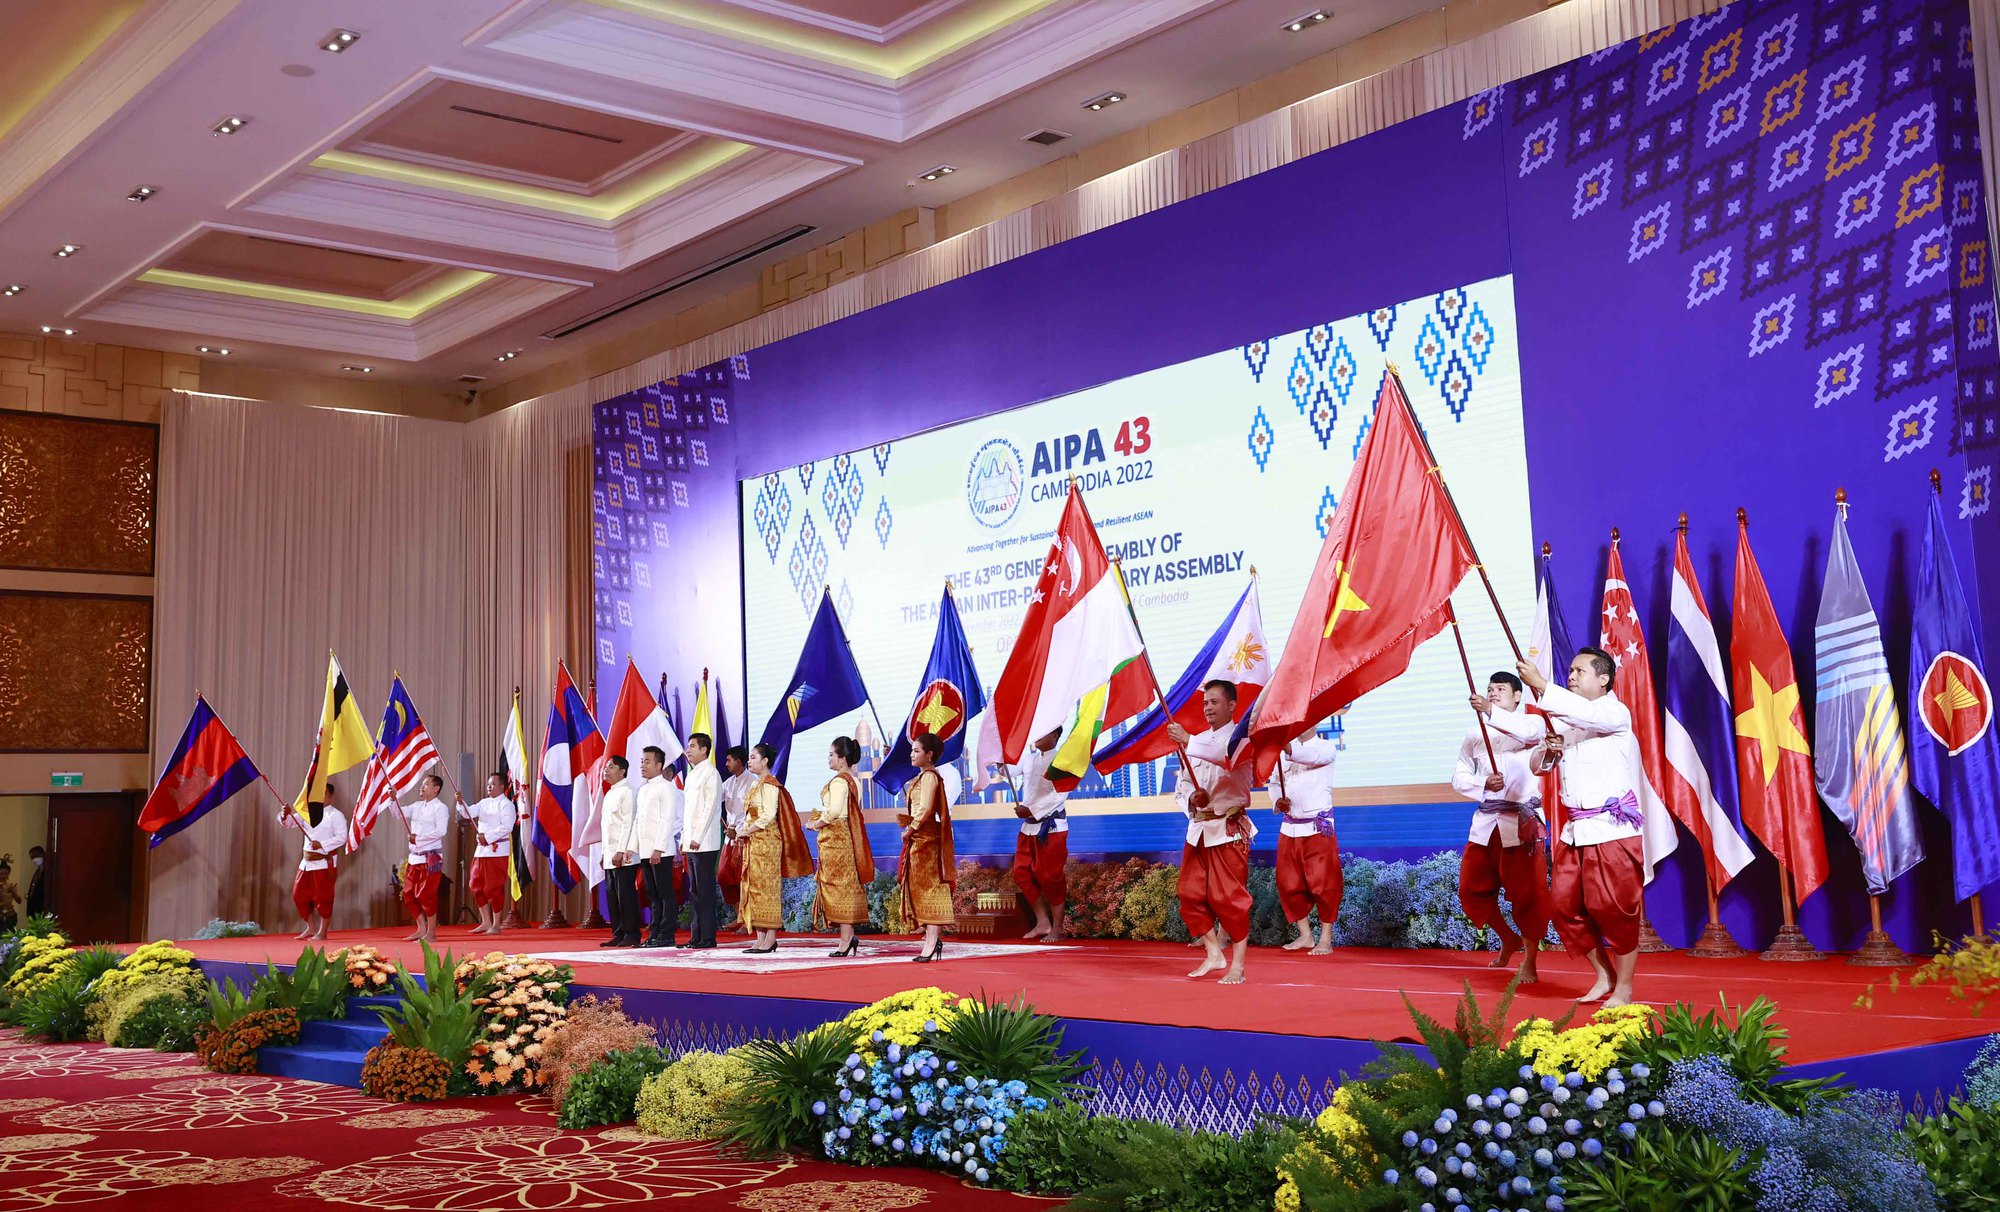 Khai mạc Đại hội đồng liên nghị viện các quốc gia Đông Nam Á lần thứ 43 - Ảnh 13.